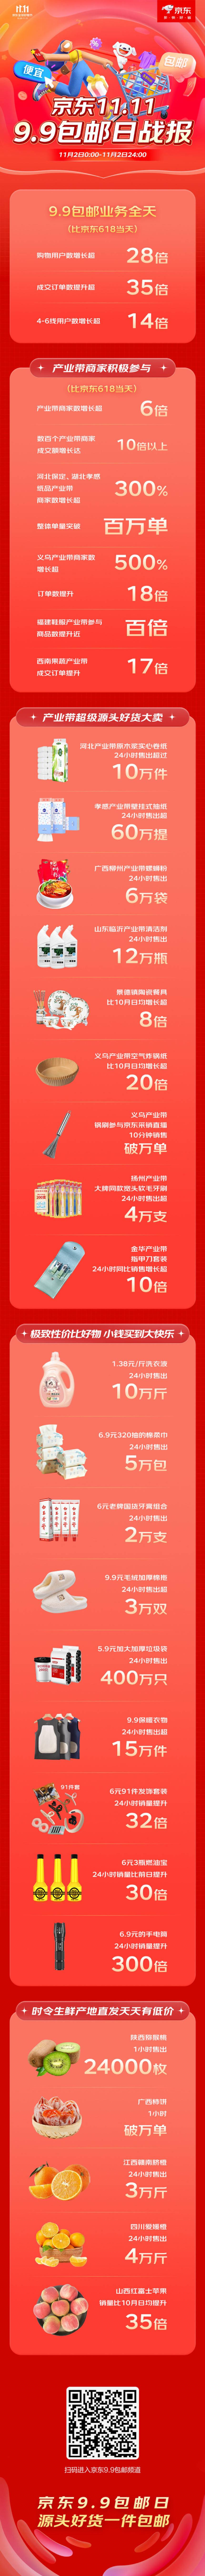 京东11.11产业带低价好物销售火爆 9.9包邮日购物用户数提升超28倍